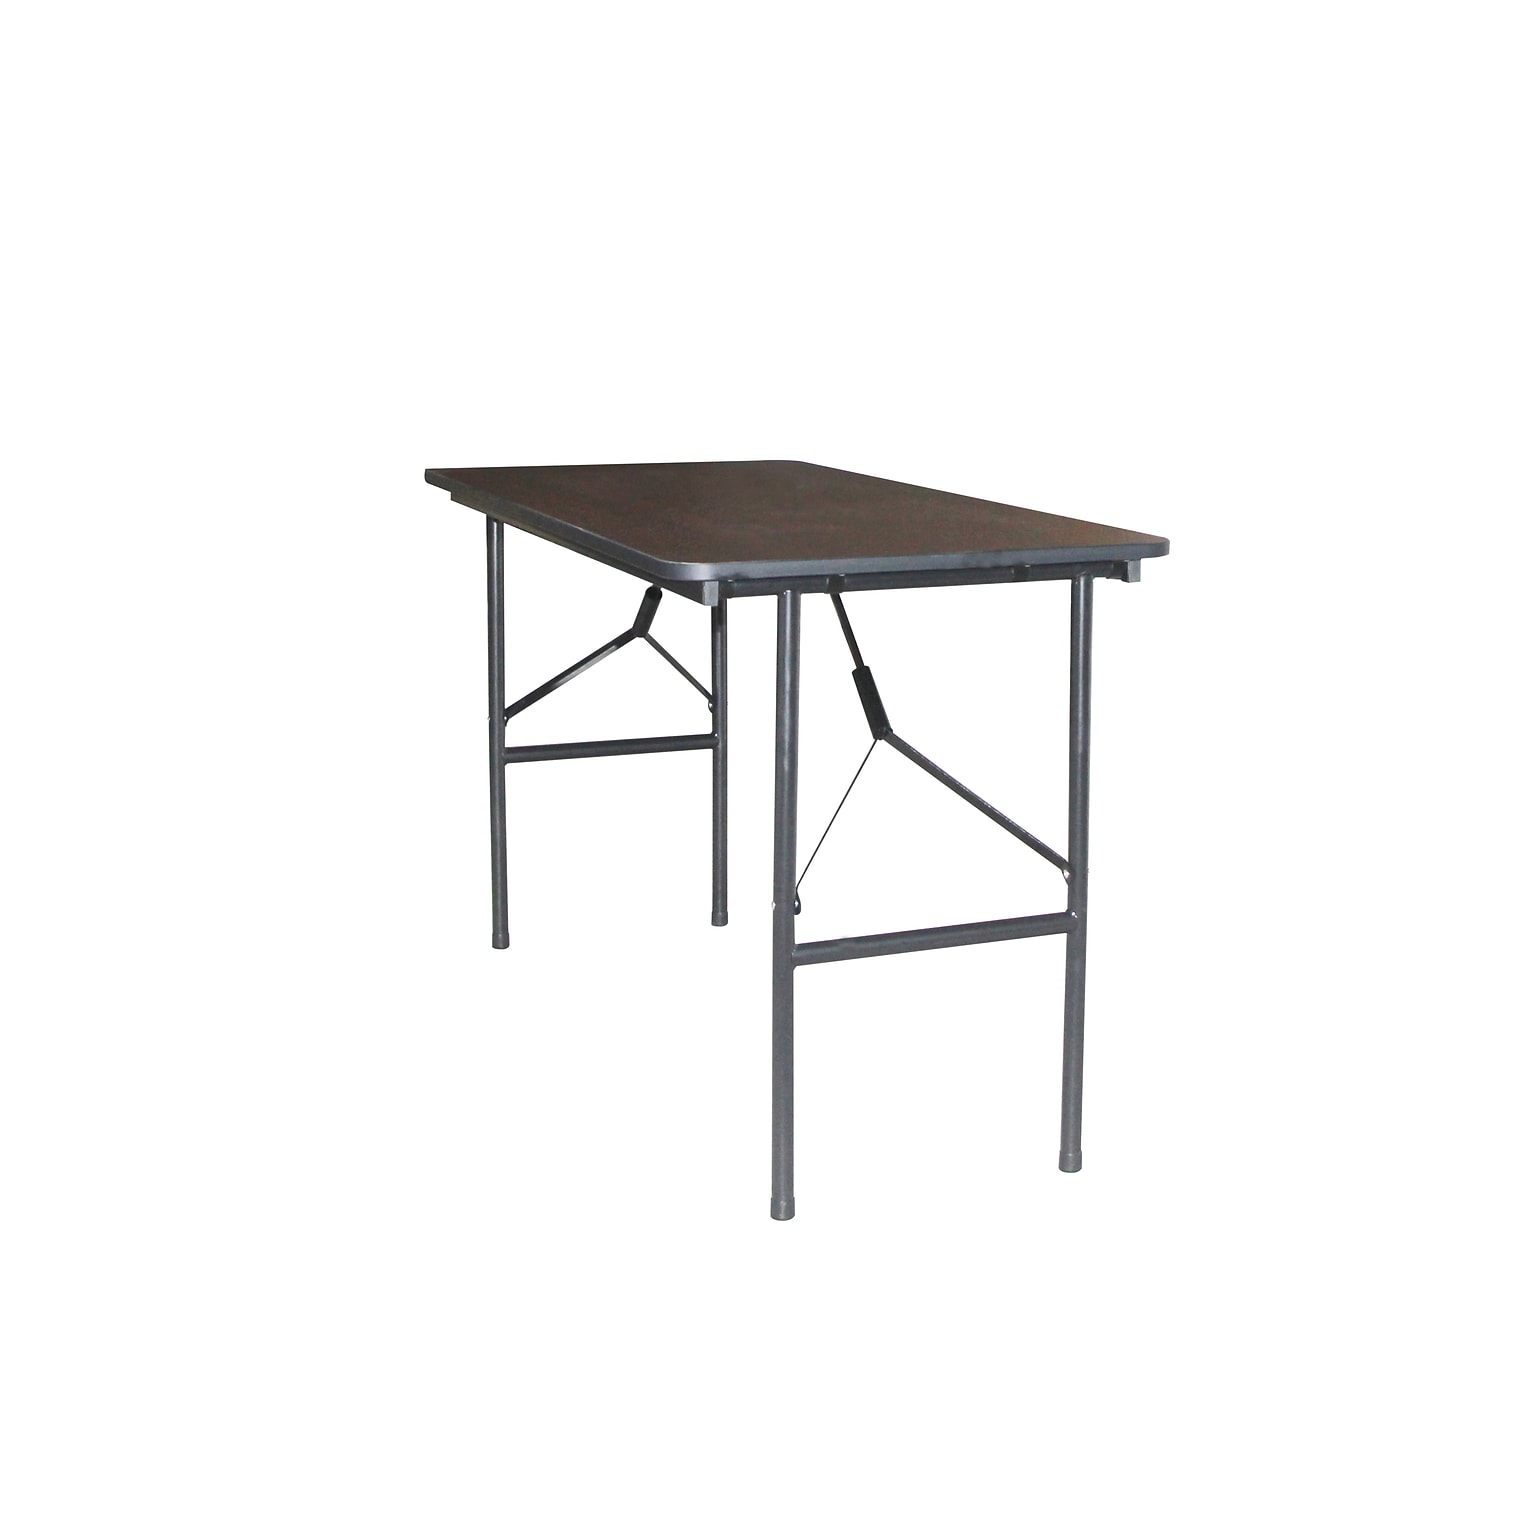 Quill Brand® Folding Table, 48L x 24W, Walnut (27095/51256)